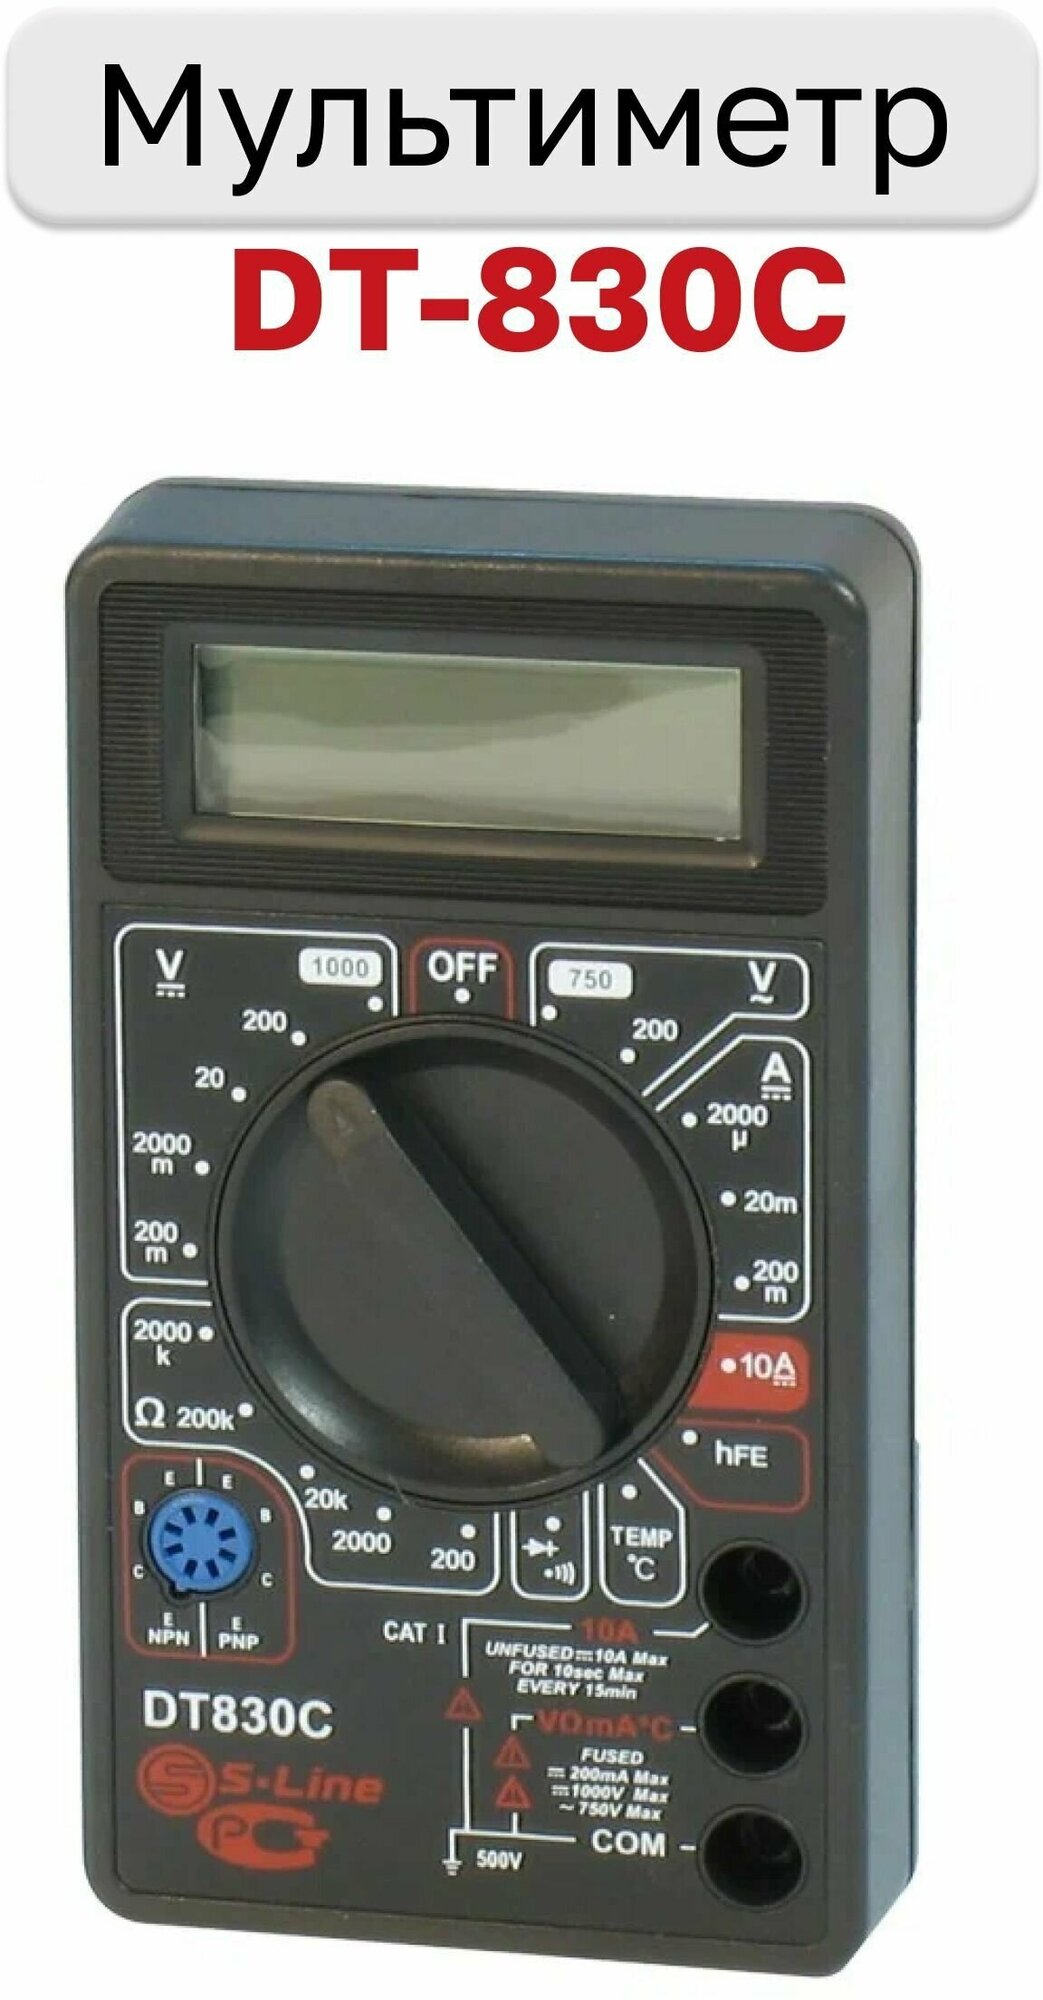 Мультиметр DT-830C